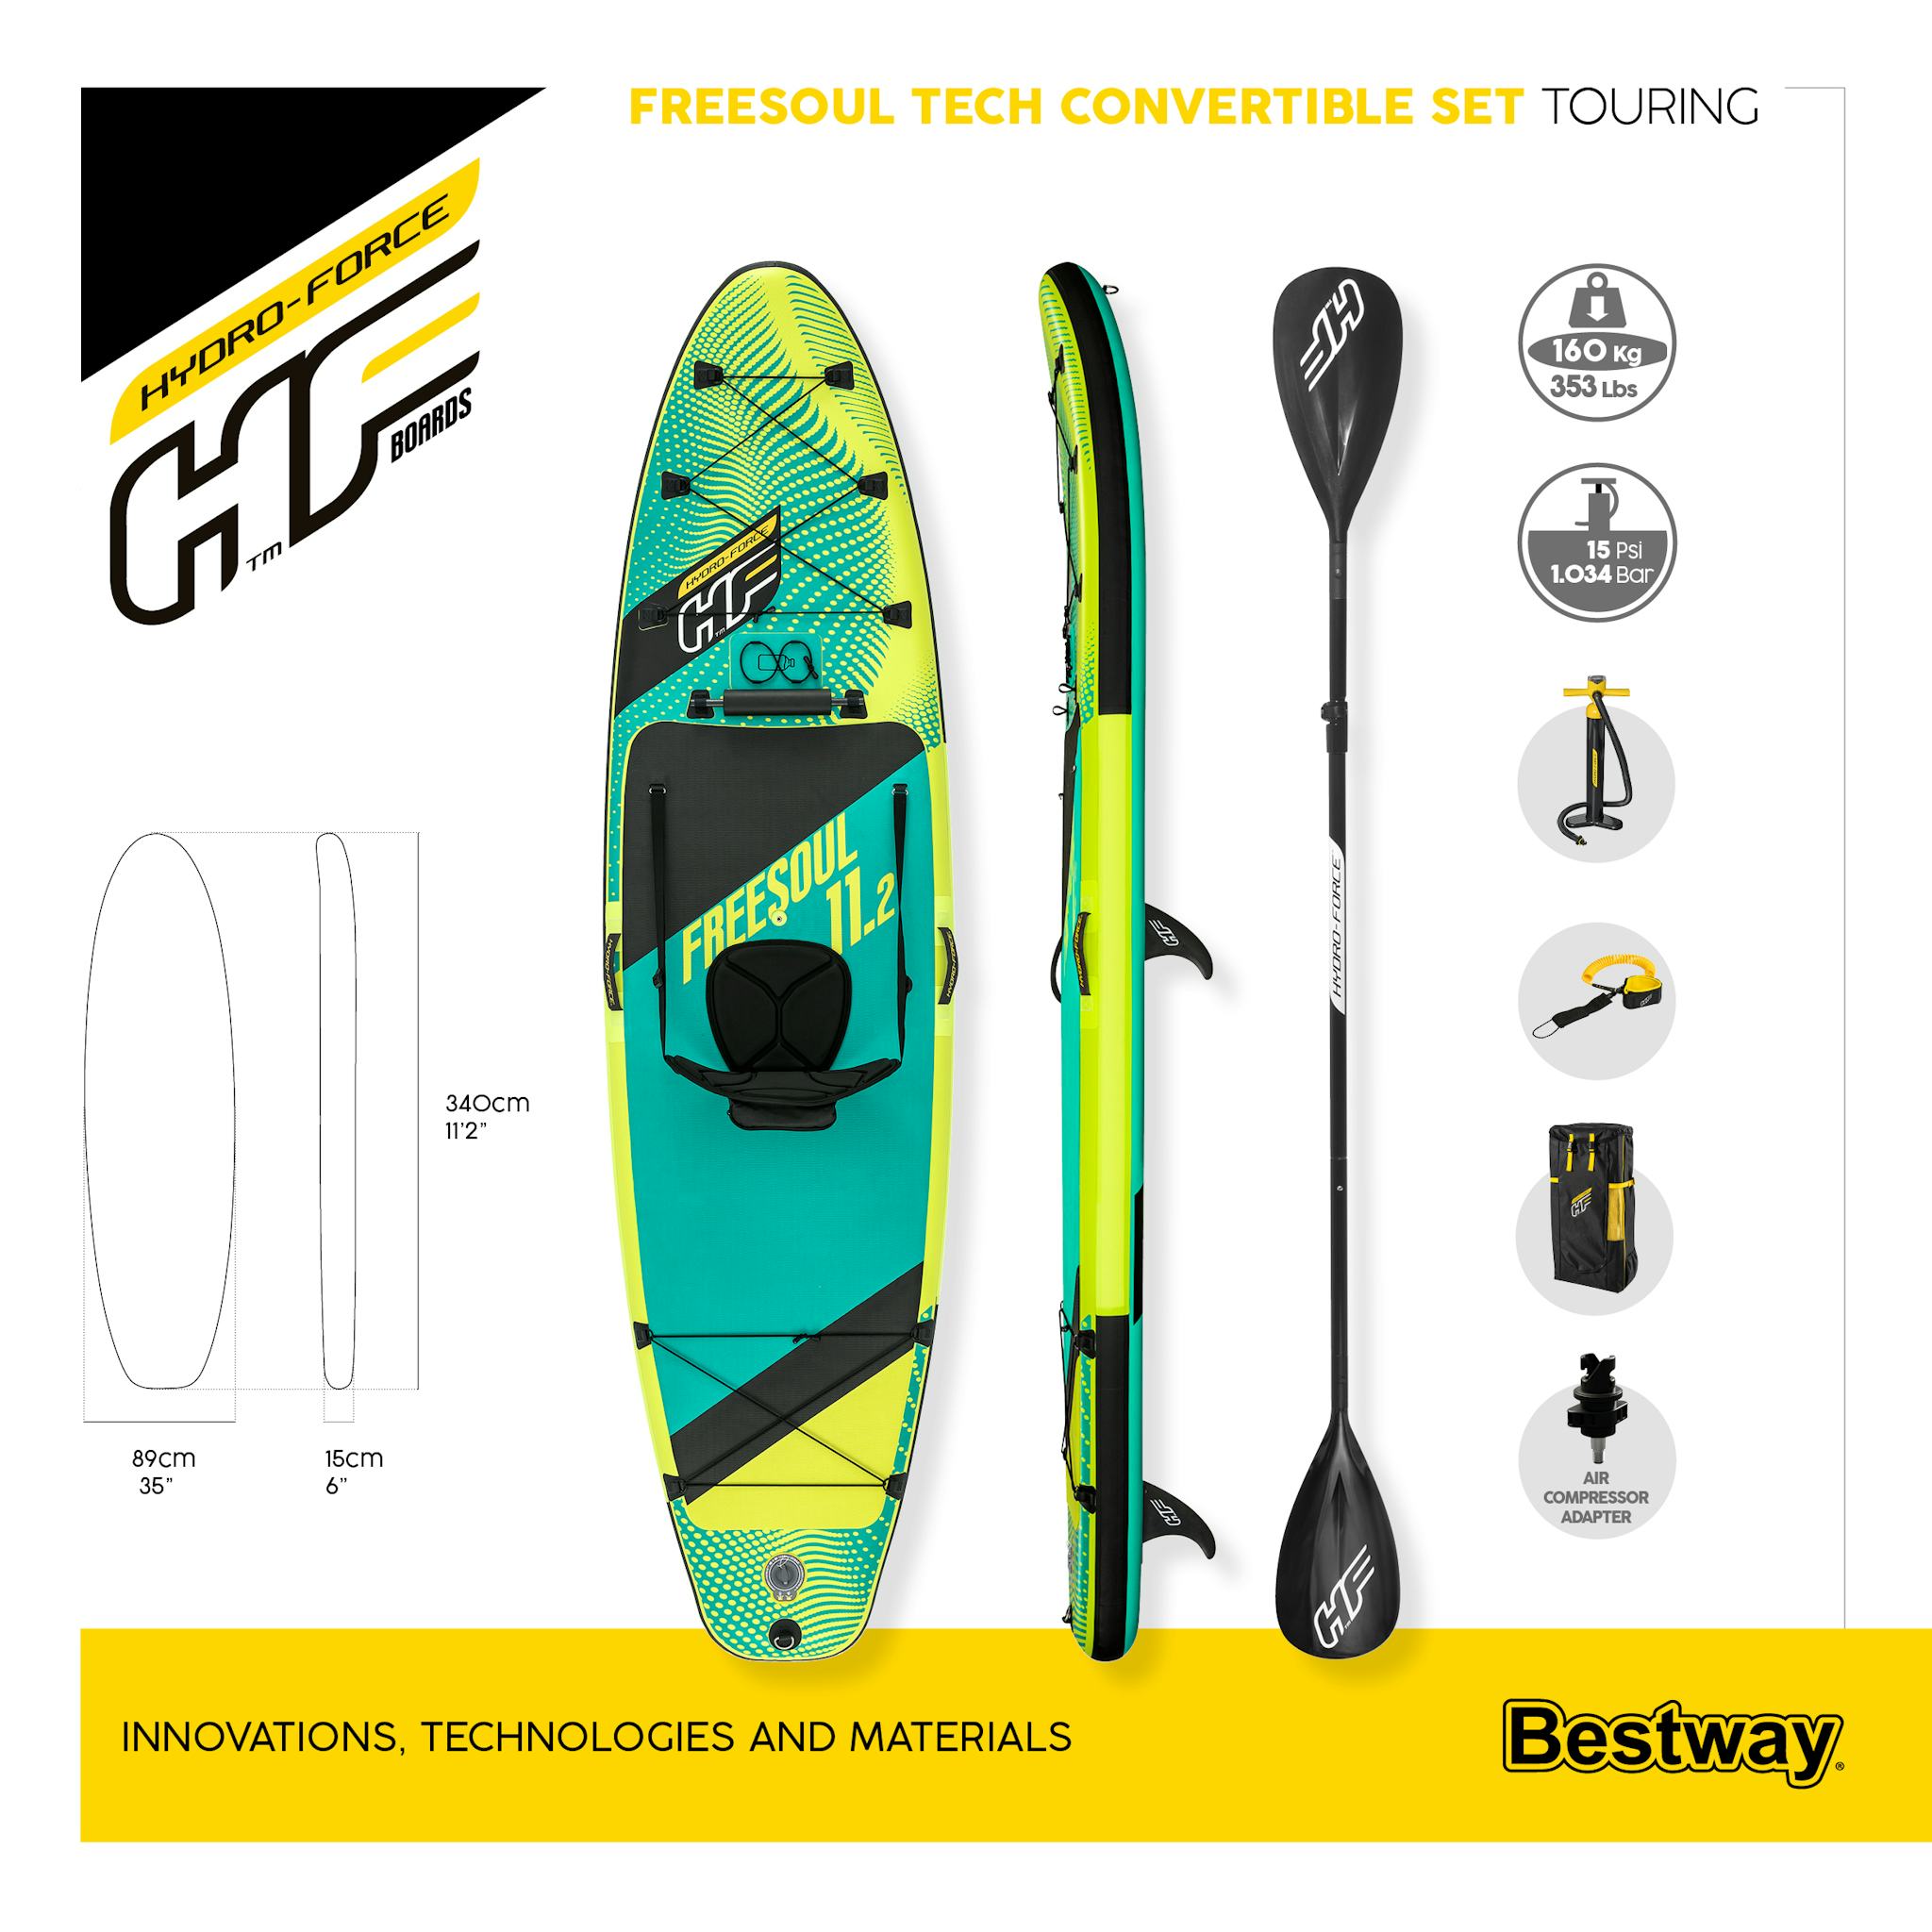 Sport Acquatici Tavola da SUP e kayak Freesoul Tech 2 da 340x89x15 cm Bestway 11